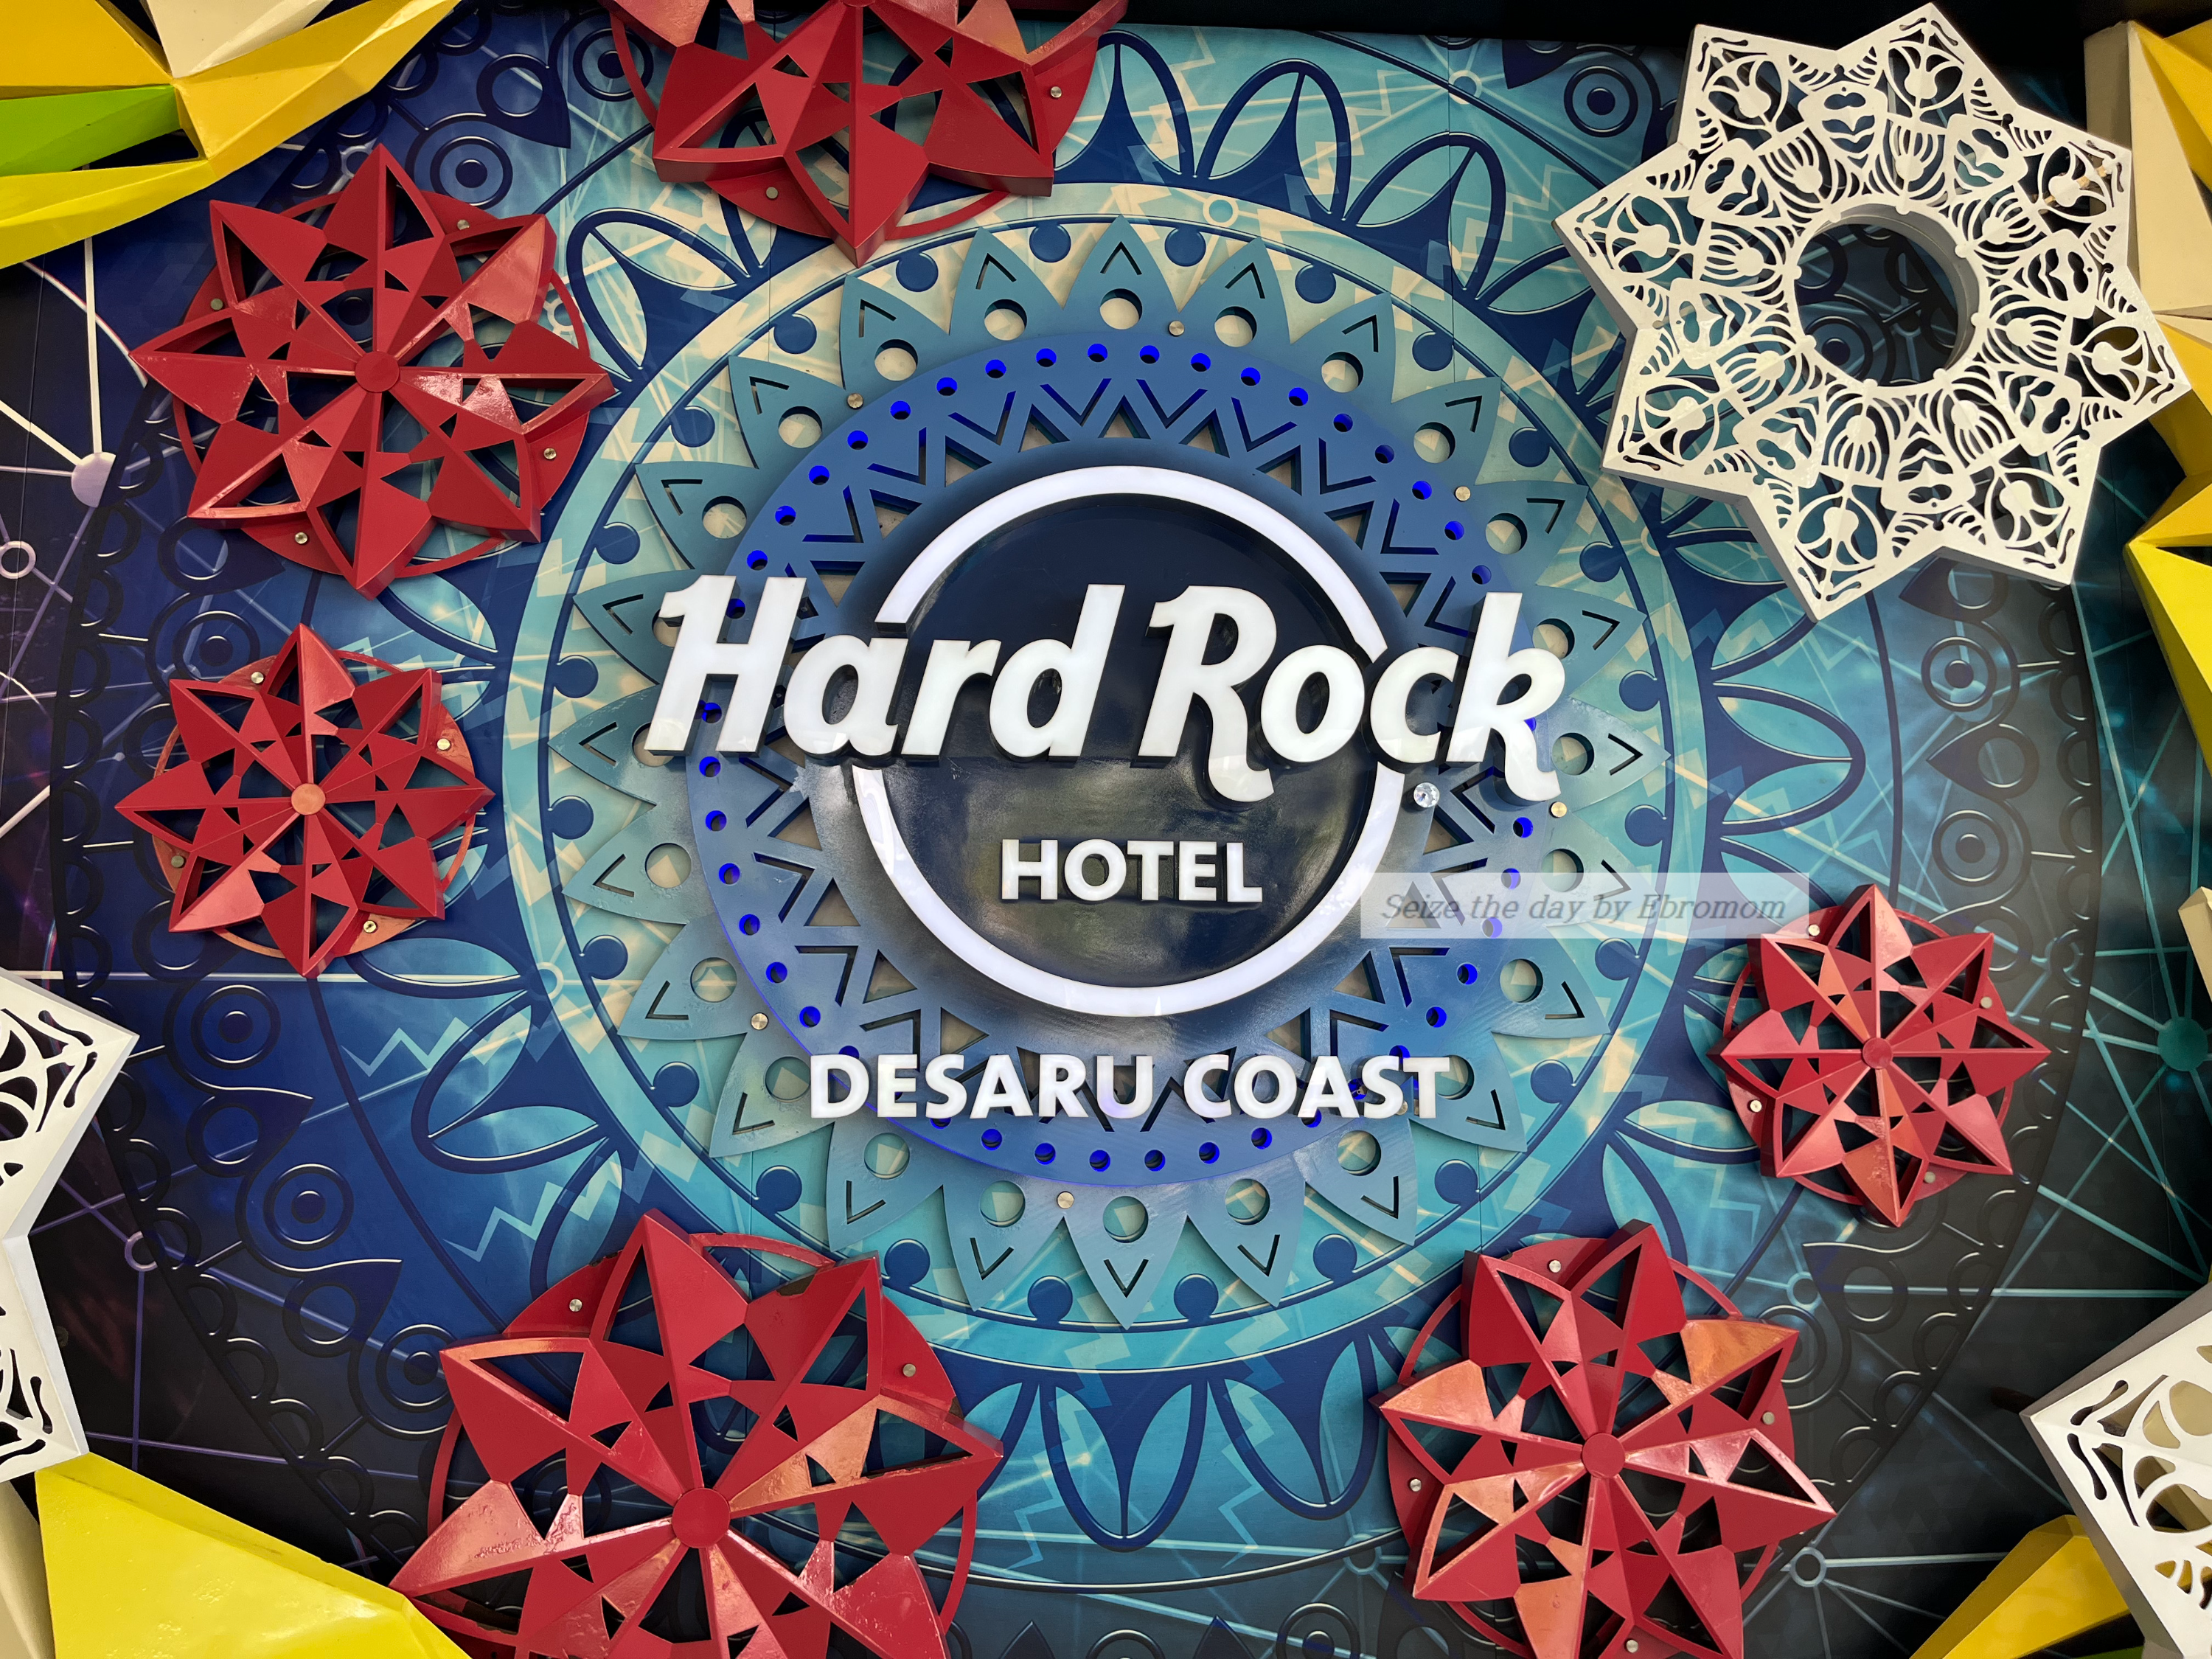 Hard Rock Hotel Desaru Coast